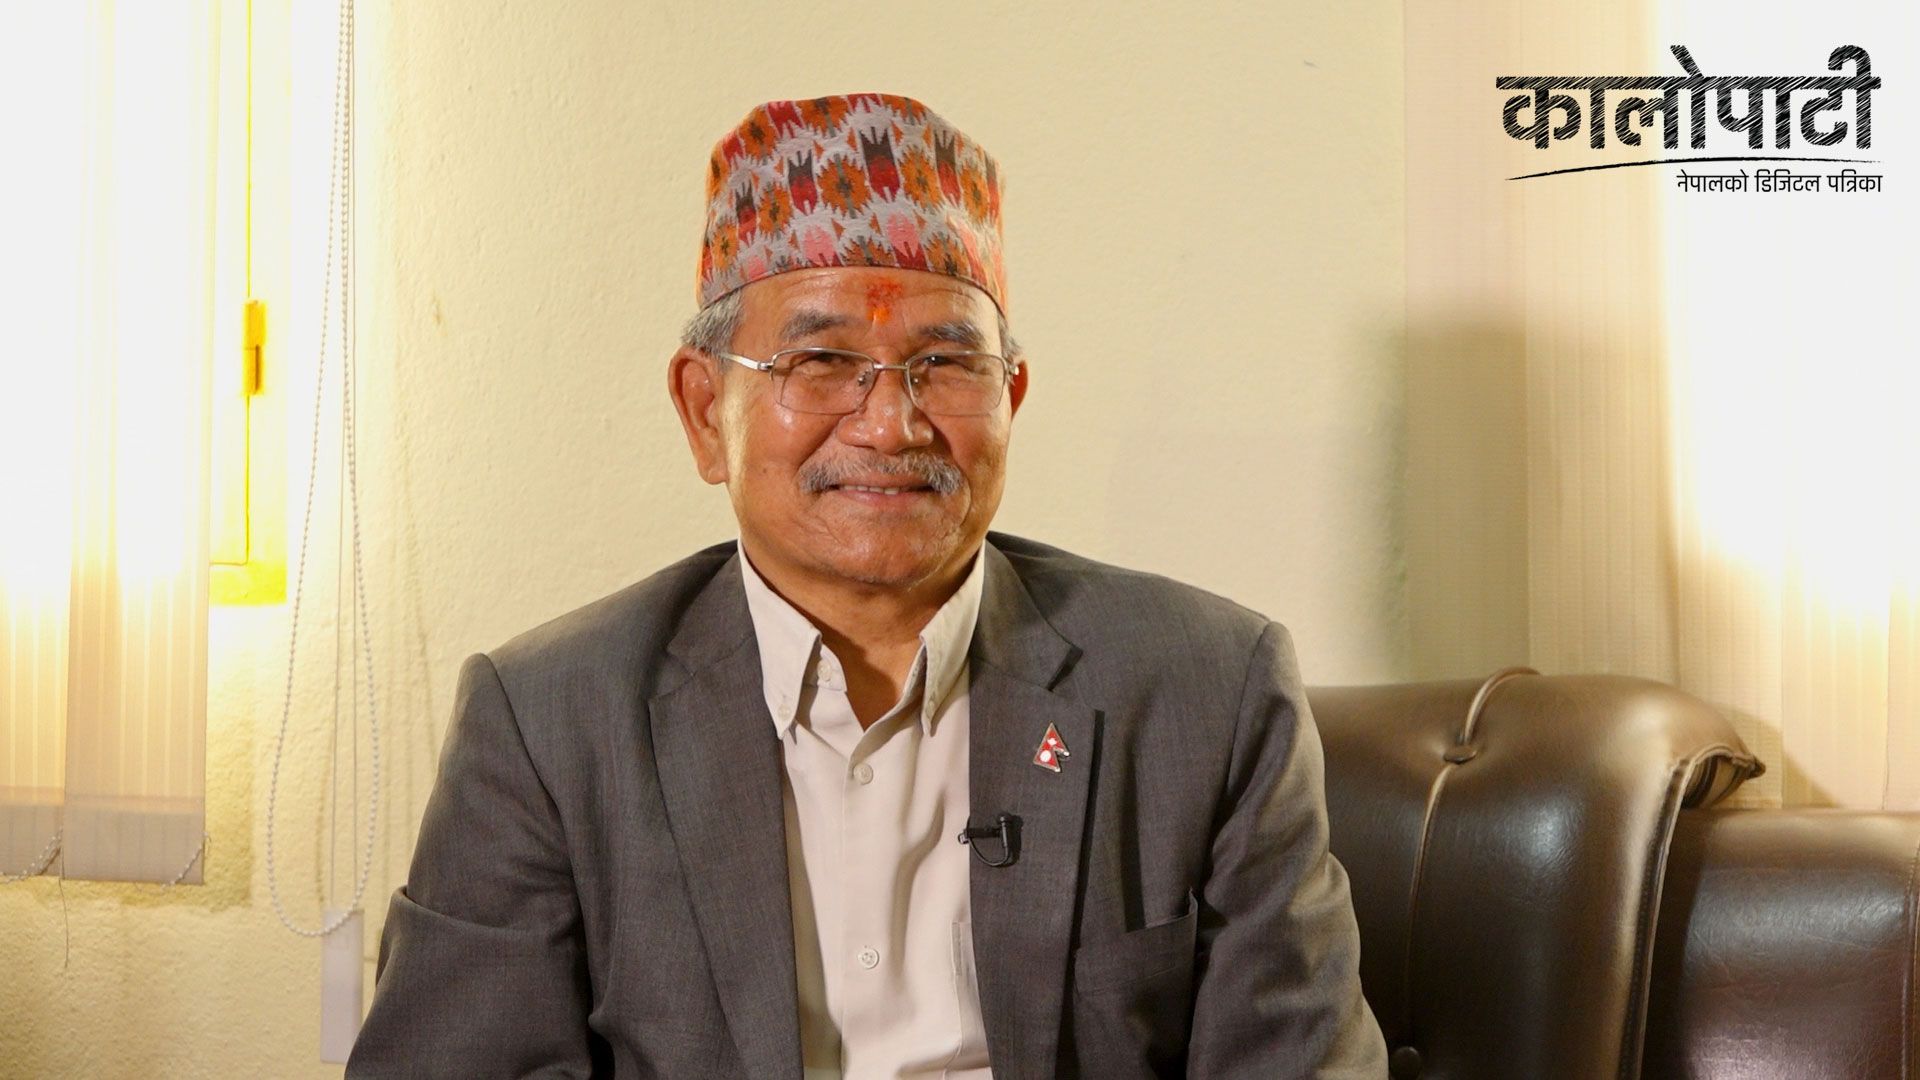 नेपाली कांग्रेसबाट ललितपुरको मेयरमा चिरिबाबु महर्जनको उम्मेदवार